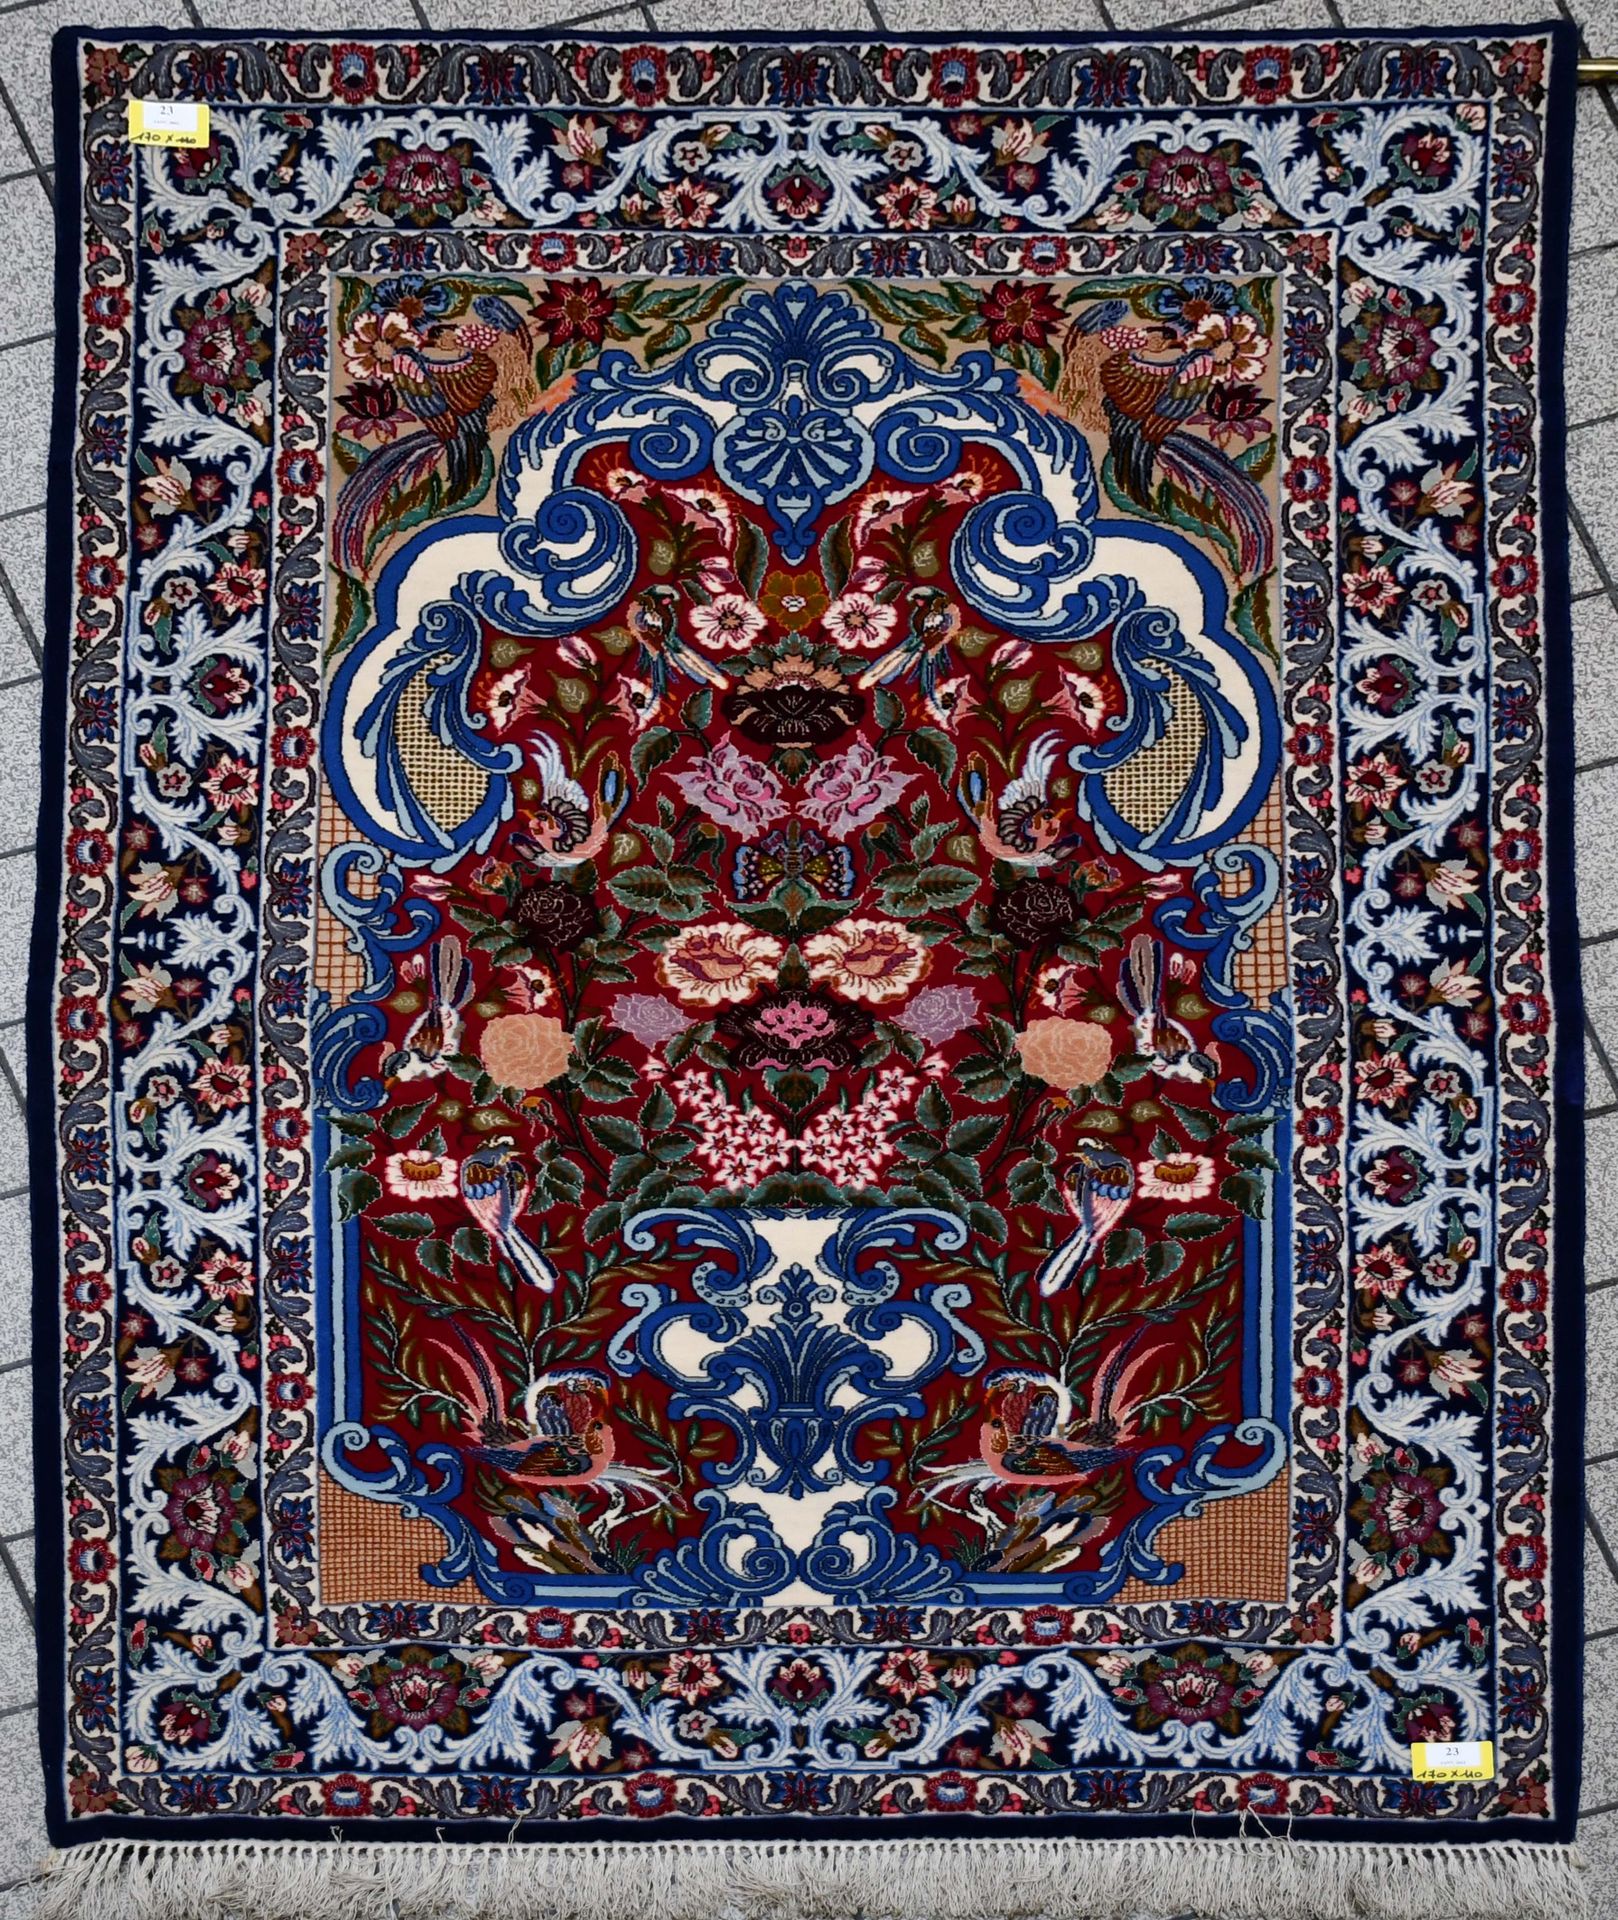 Null Tapis

Fin tapis d’Orient iranien de prière.

Dimensions : 170 cm x 110 cm.